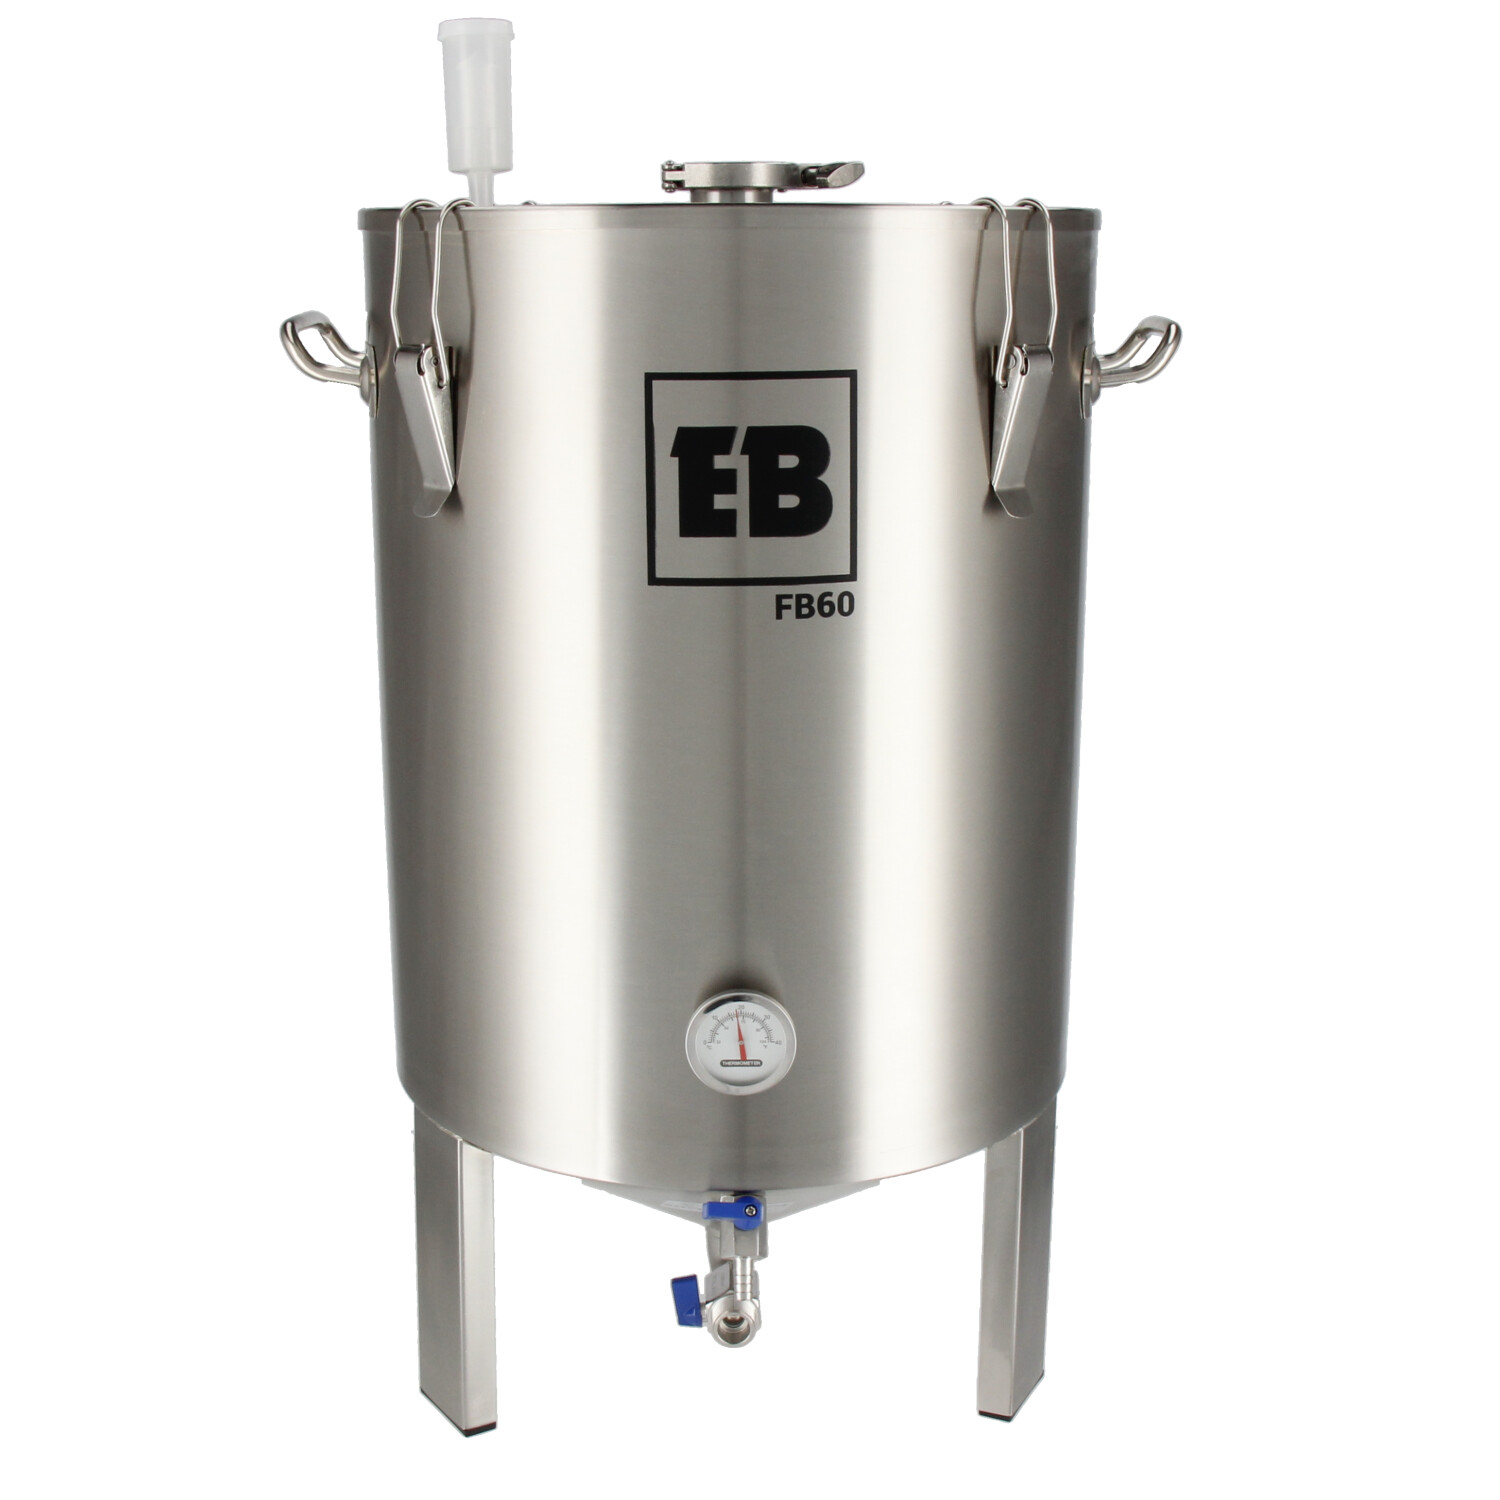 Easybrew Gärbehälter Fermenter 60 Liter mit Dry-Hop-Deckel